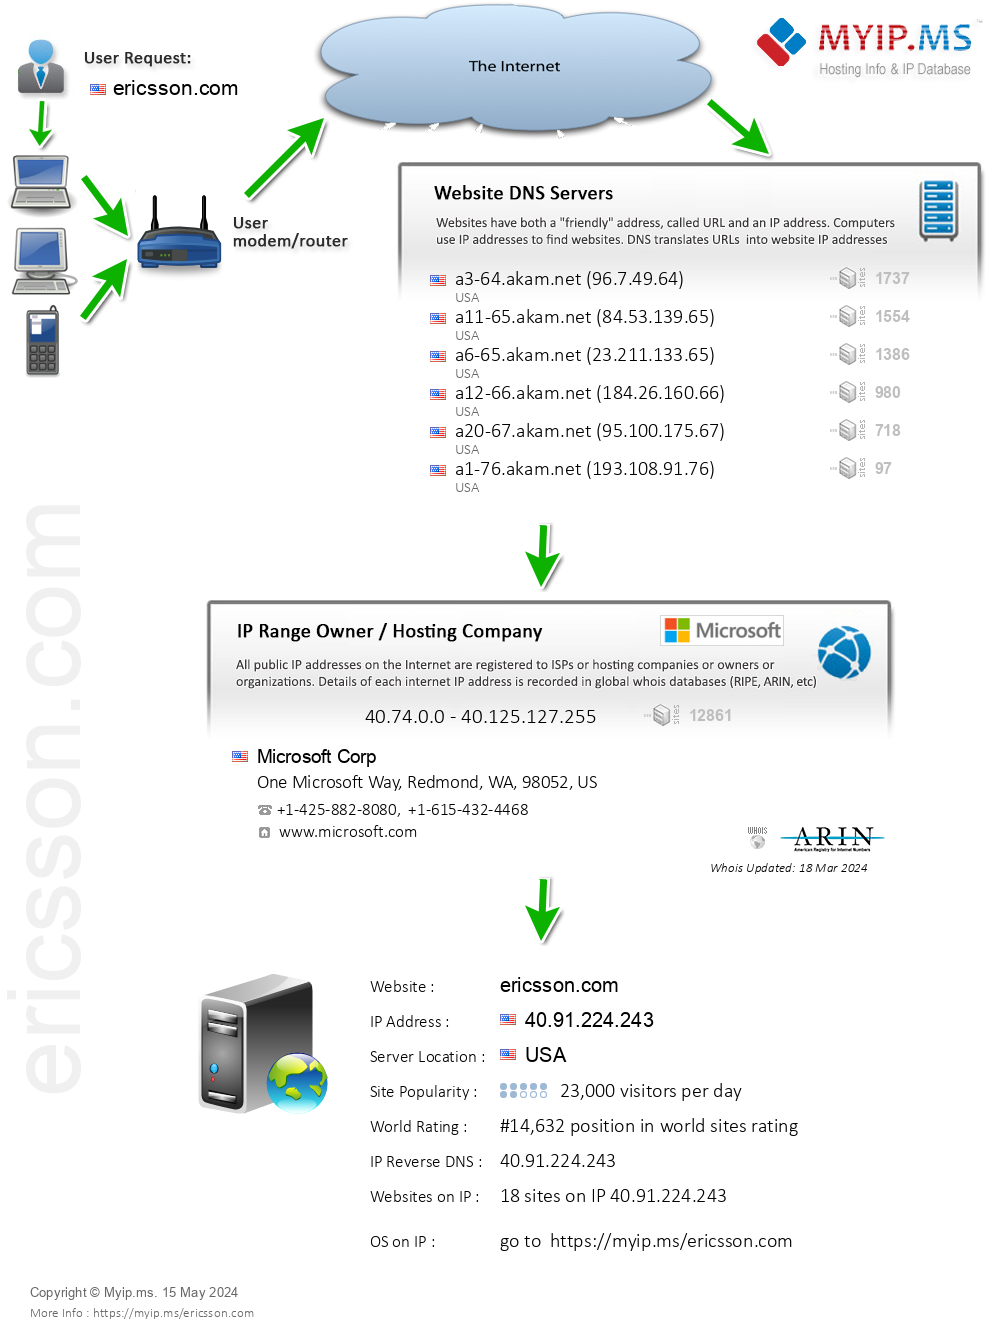 Ericsson.com - Website Hosting Visual IP Diagram